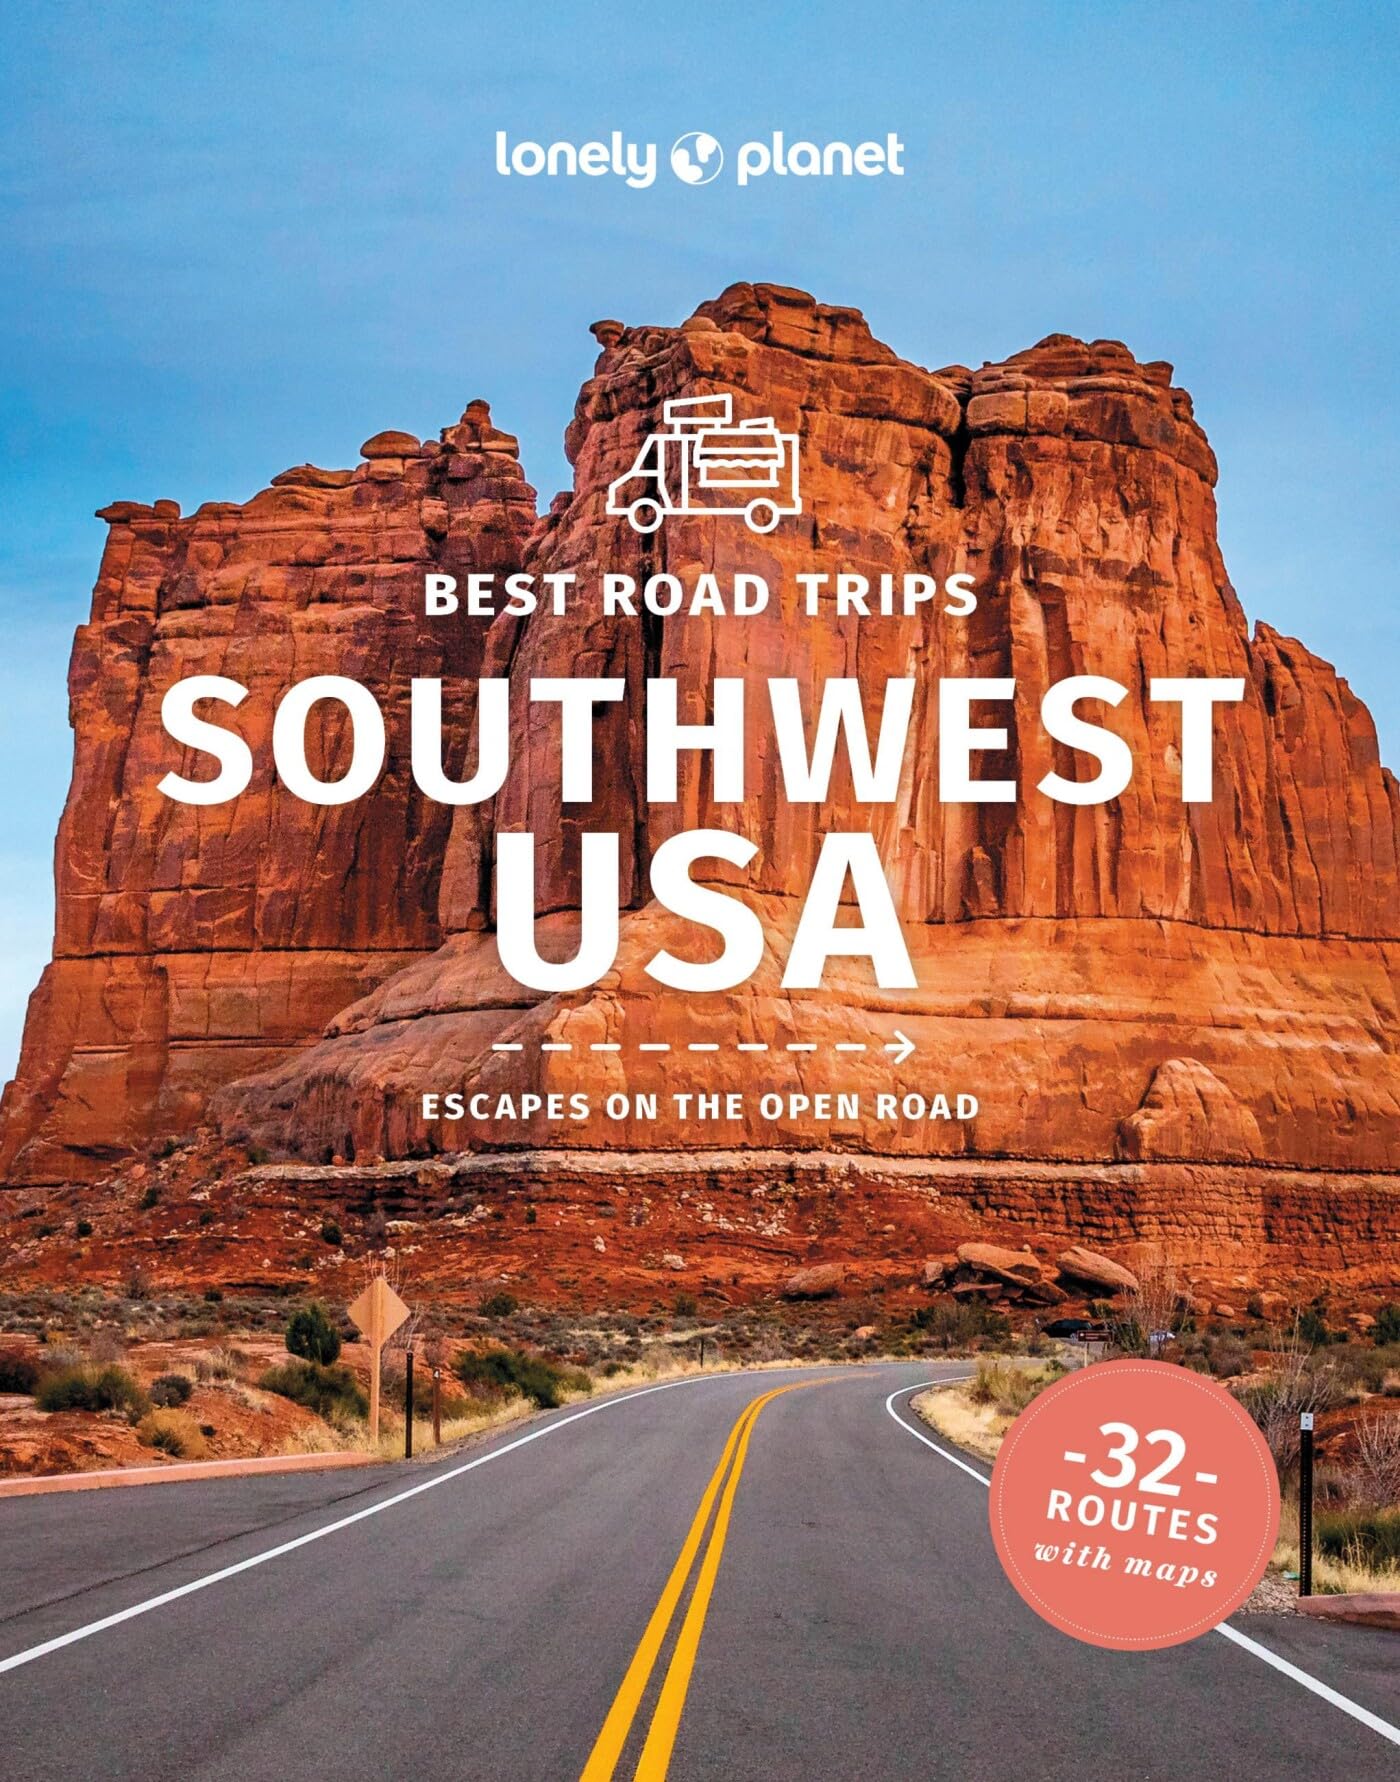 Southwest USA's Best Trips